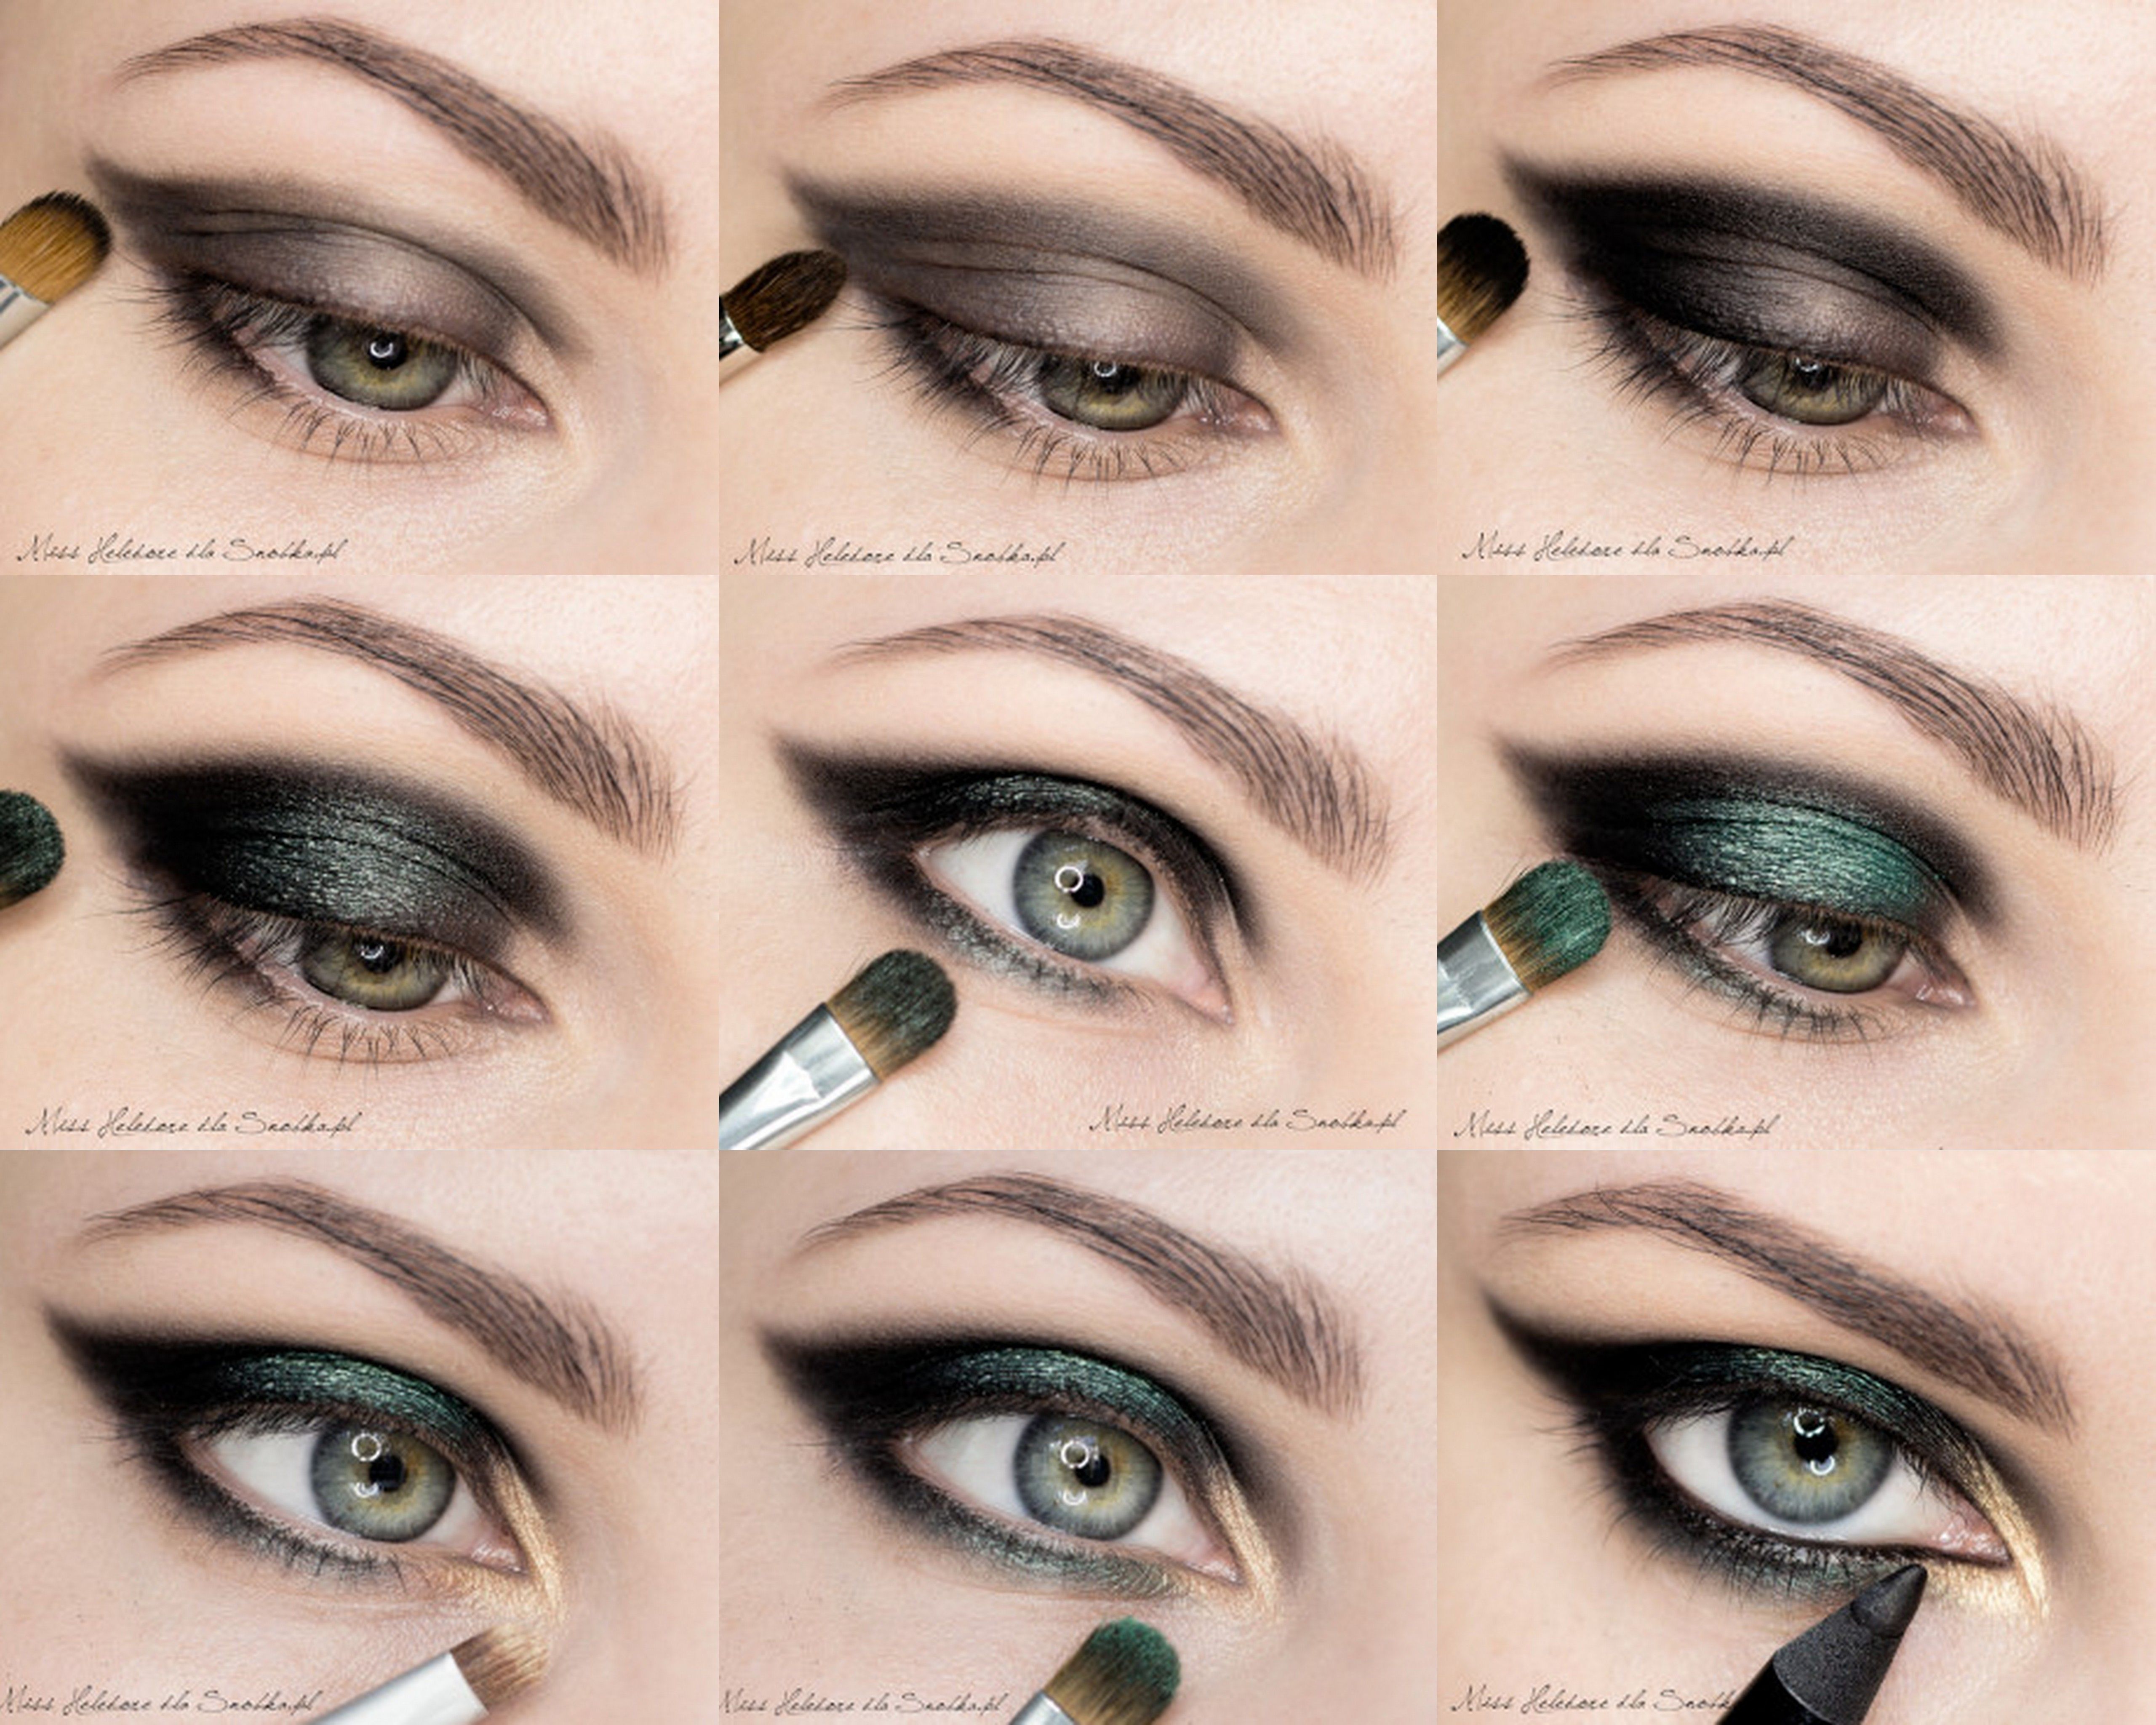 Макияж для зелёных глаз и тёмных волос: фото пошагово, видео